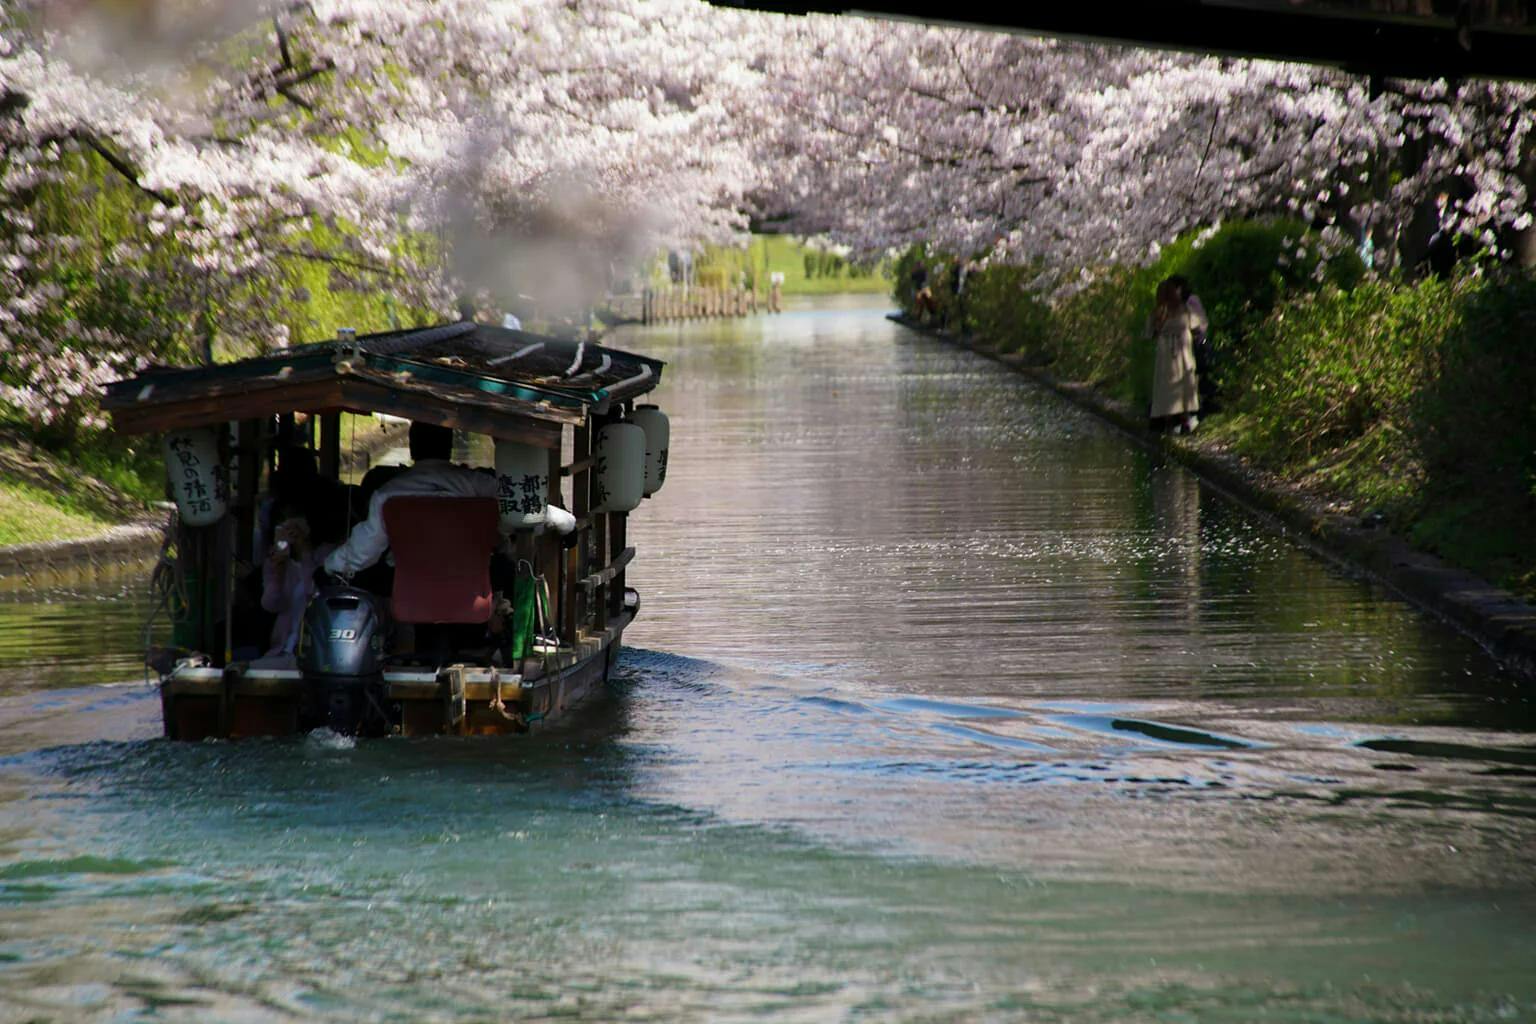 A small yakatabune glides through a river